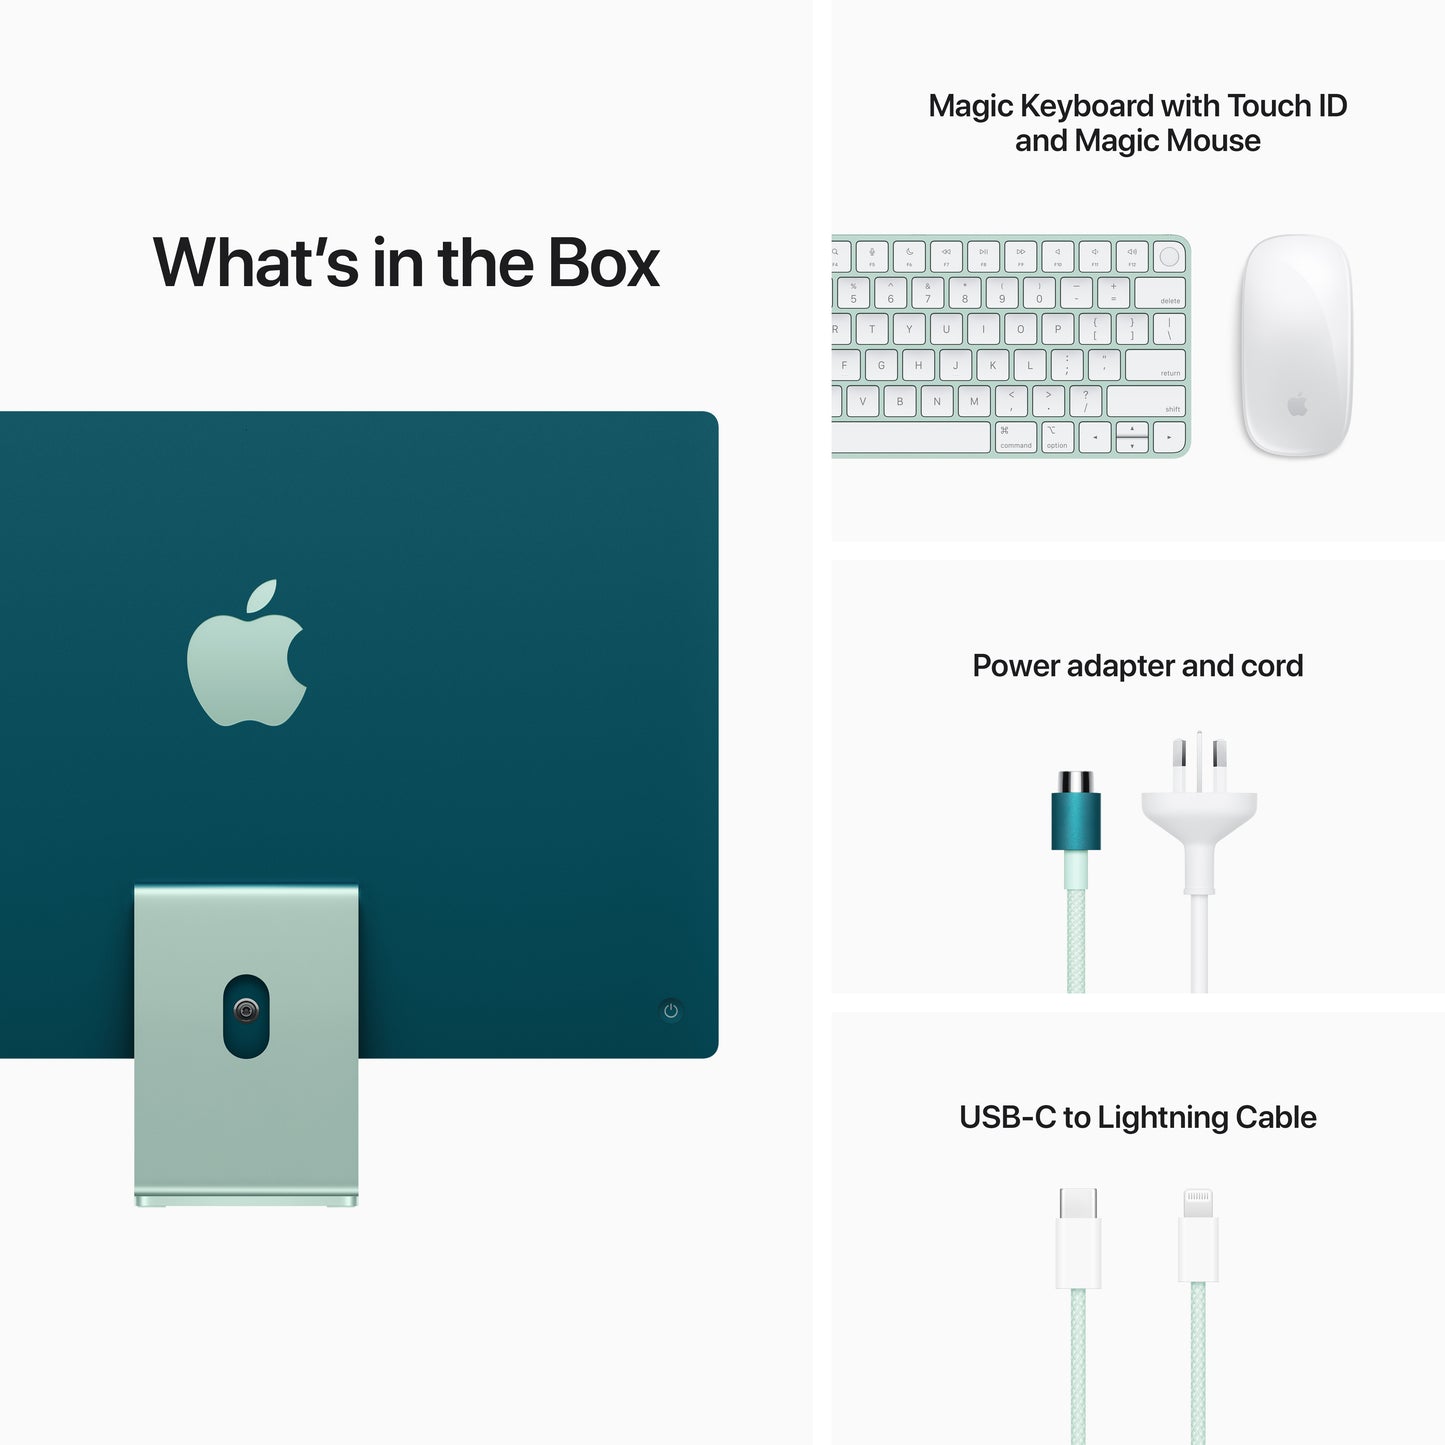 Apple iMac 24-inch | M1 | 8-core CPU | 8-core GPU | Green